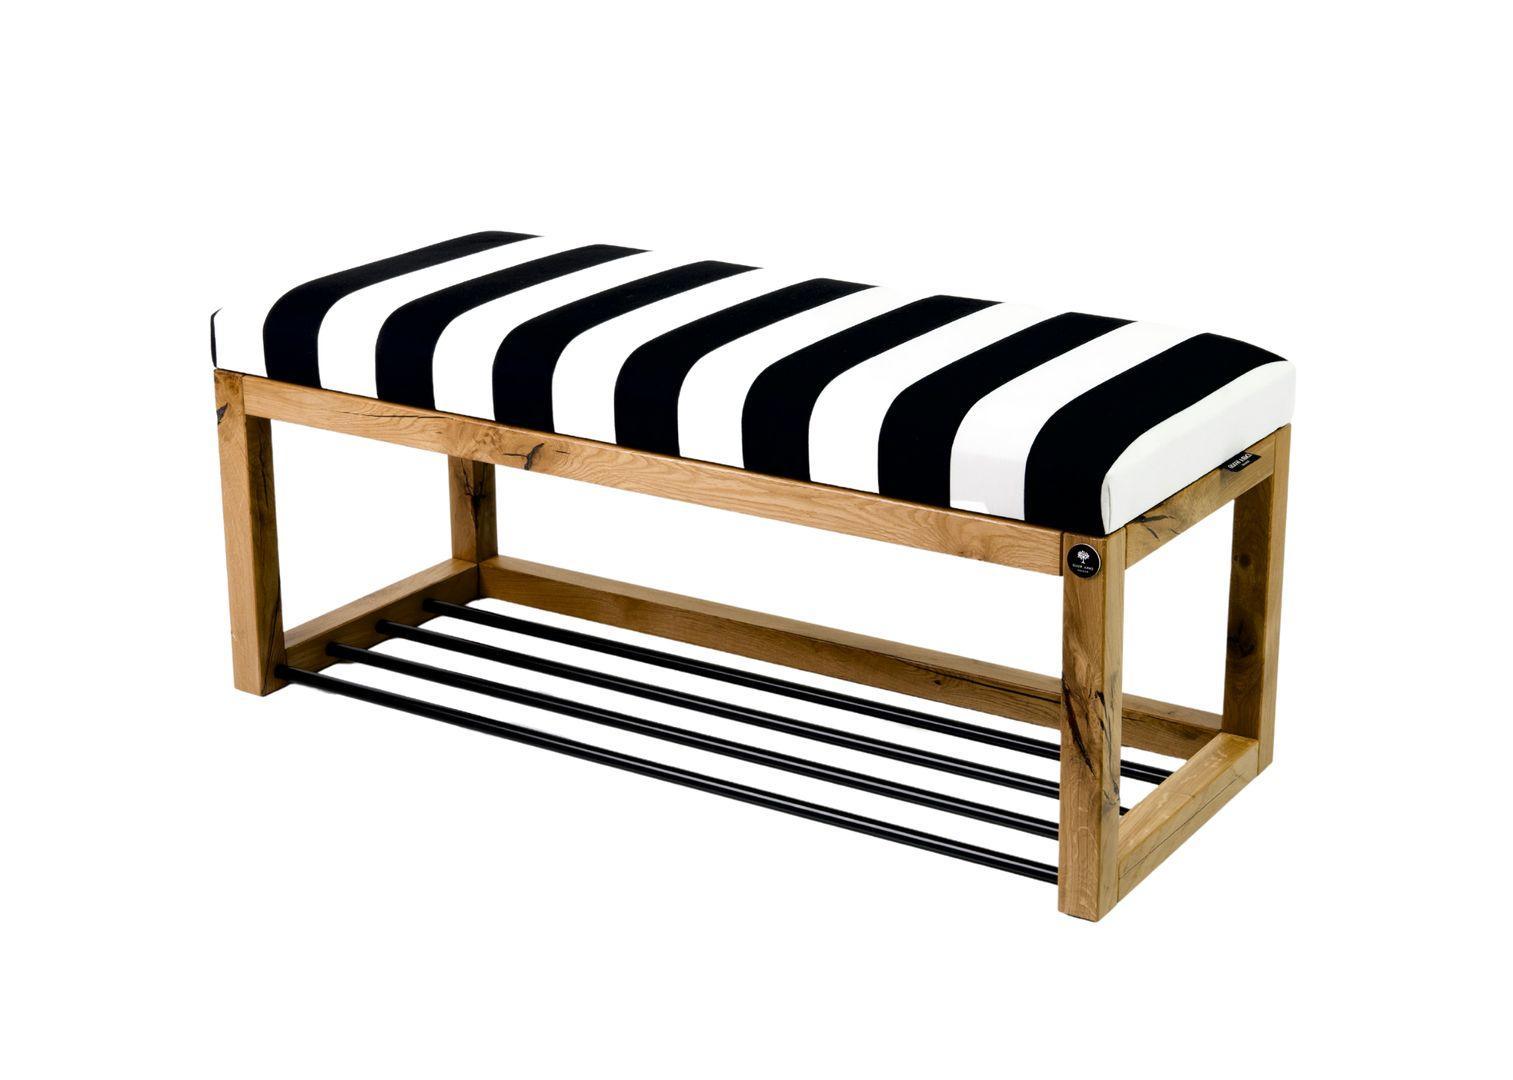 Siedzisko do przedpokoju LPG-4 50x35x45 cm ławka tapicerowana nogi naturalne dąb lite drewno tkanina w pasy czarno-biała nr. 2